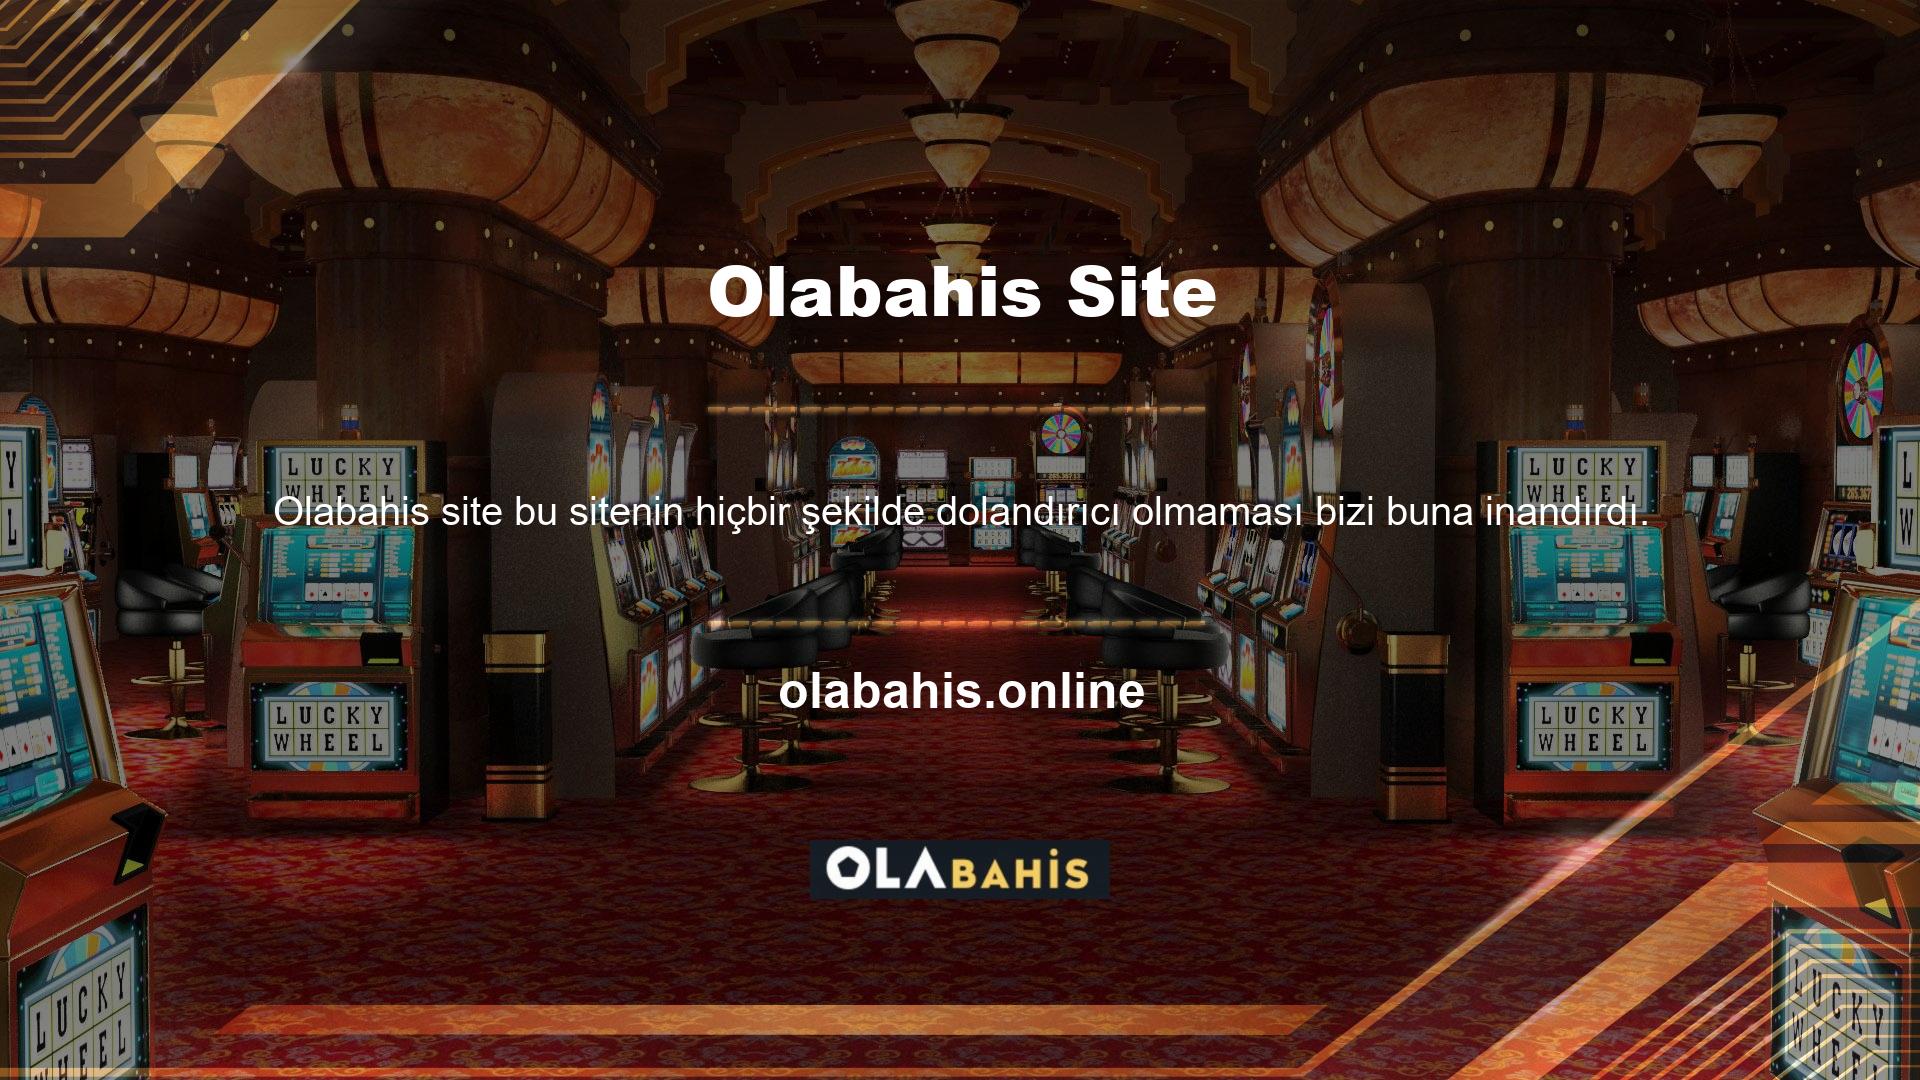 Aslında Olabahis şu anda en popüler ve popüler web sitelerinden biridir